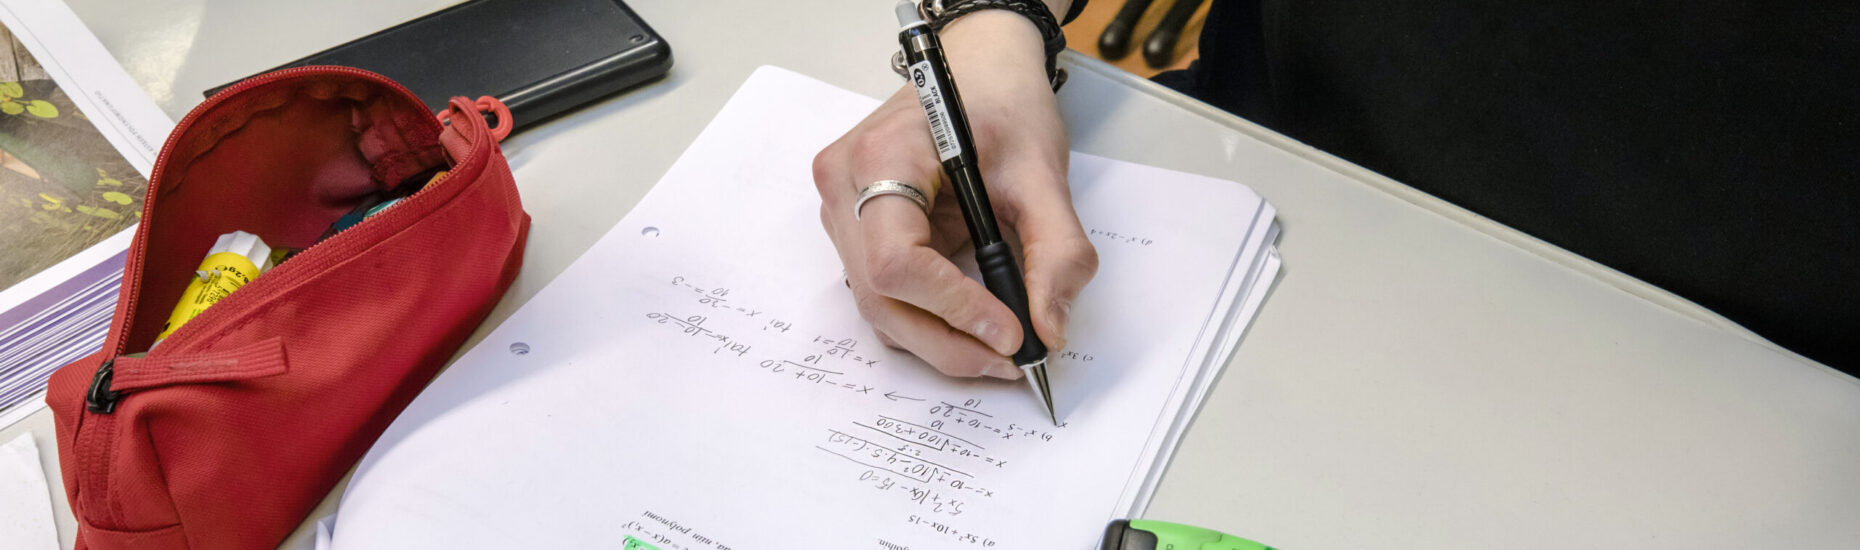 Lähikuva pulpetilta, jolla penaali, kännykkä, terotin, kaksi tussia sekä paperi, jolle käsi juuri kirjoittamassa.